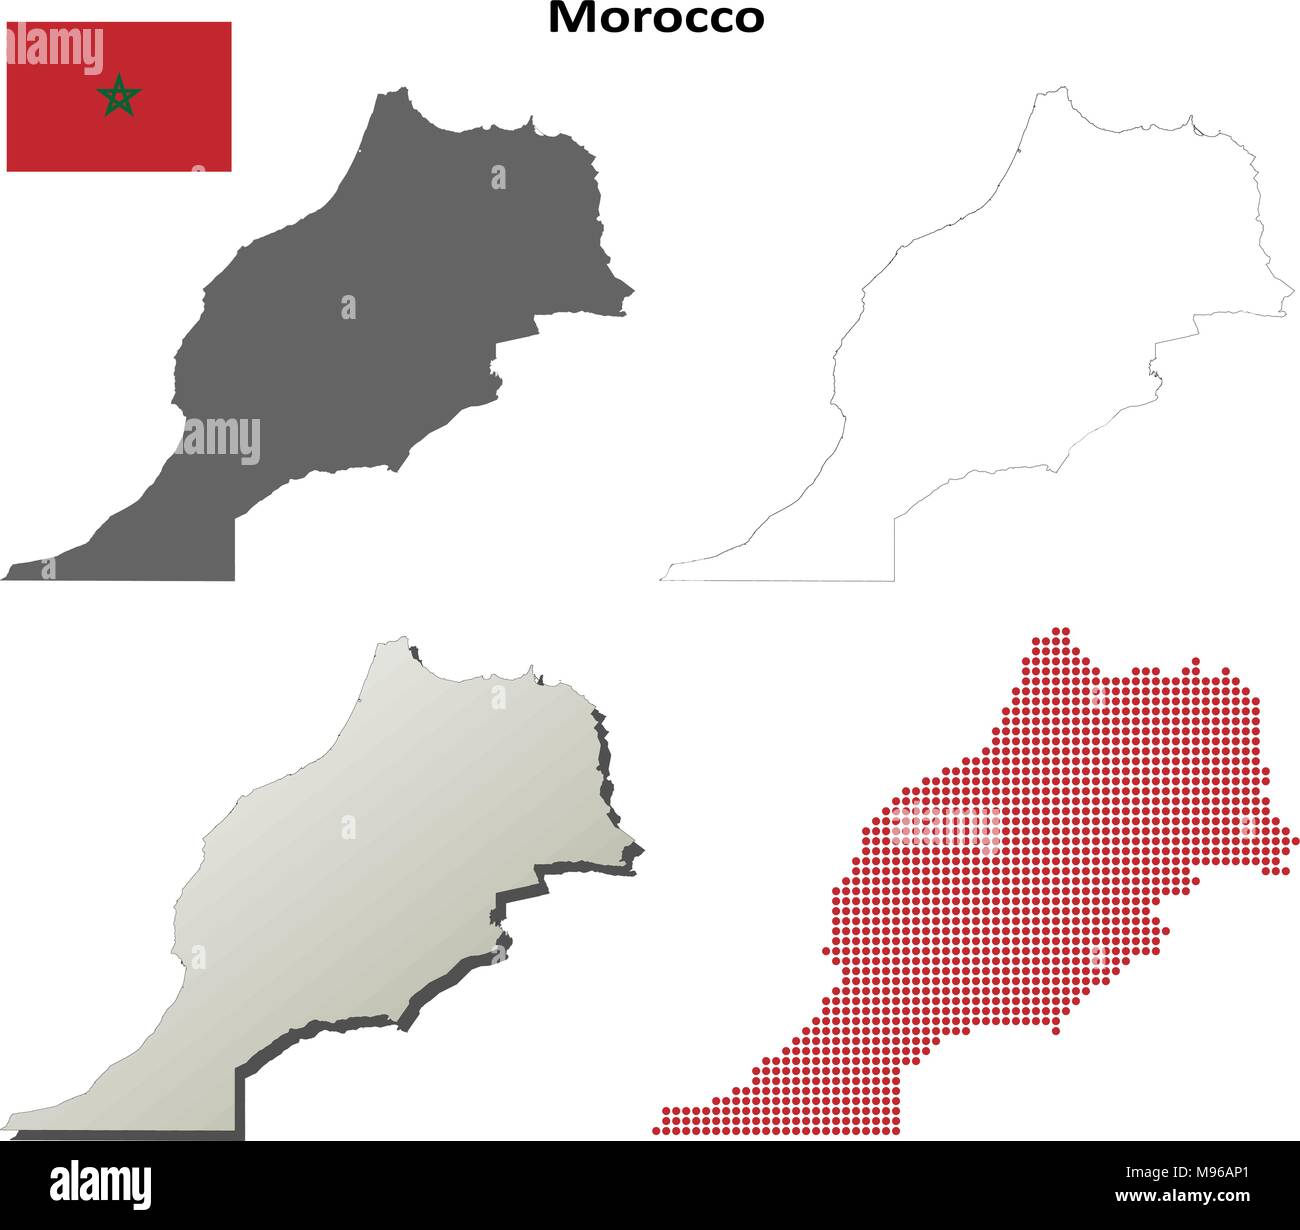 Maroc carte contour défini Illustration de Vecteur